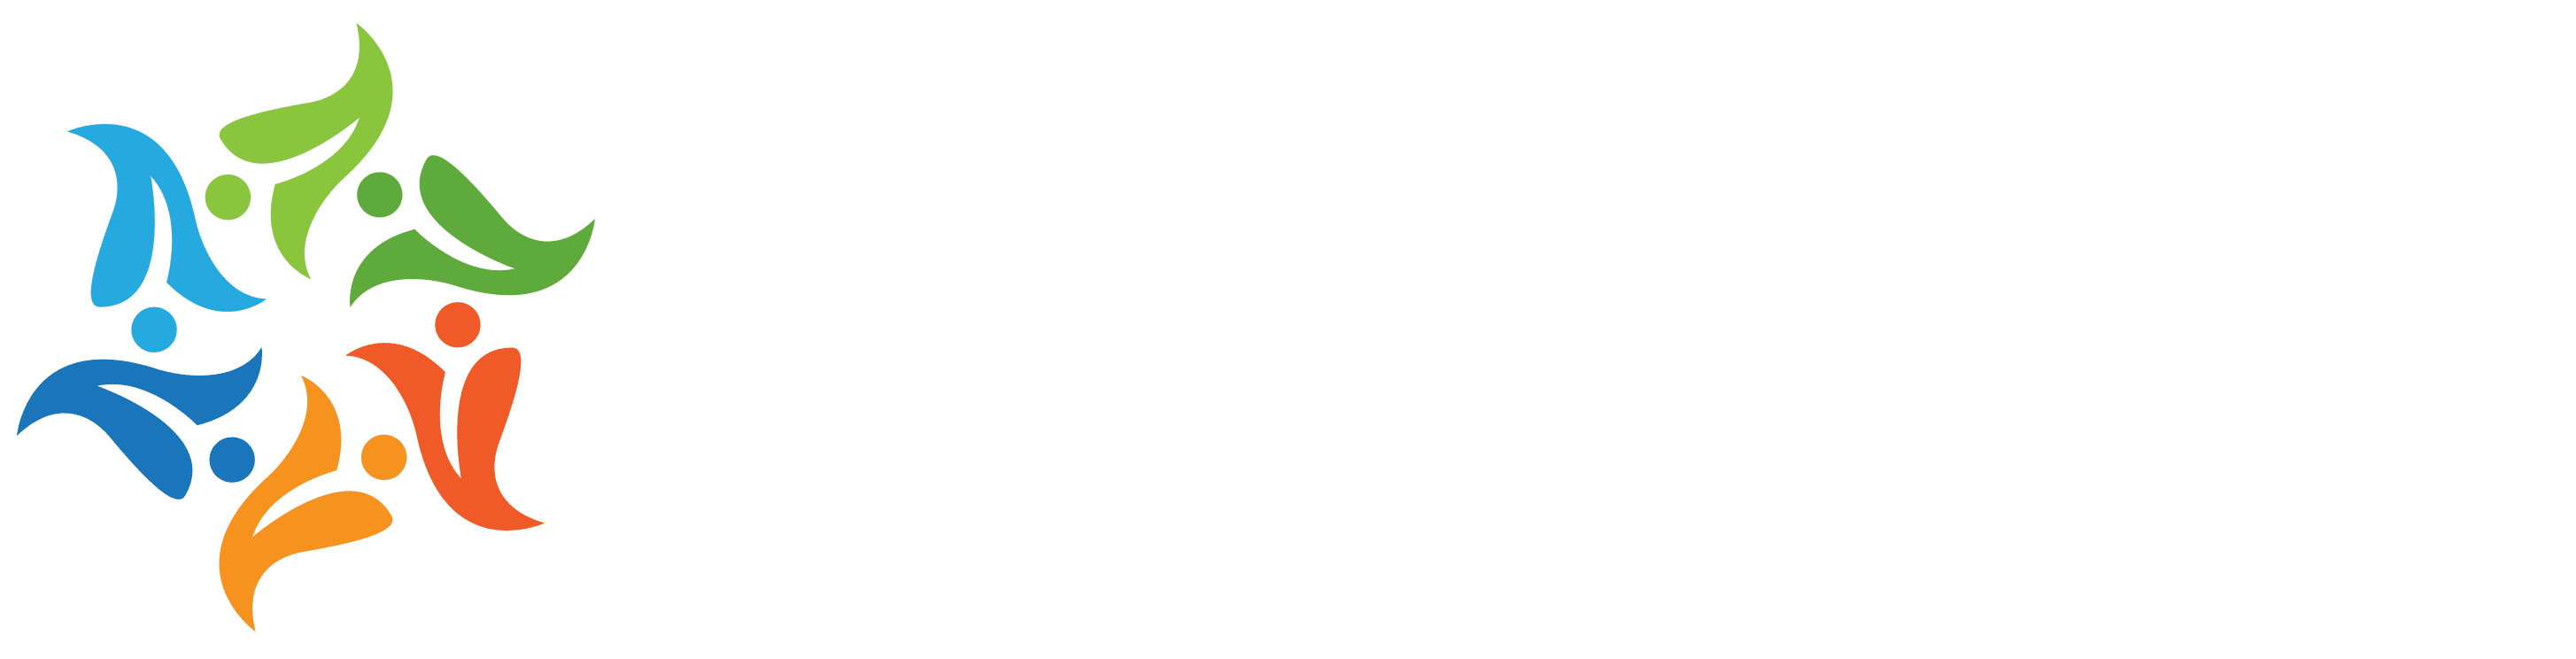 Logo-hadac-white